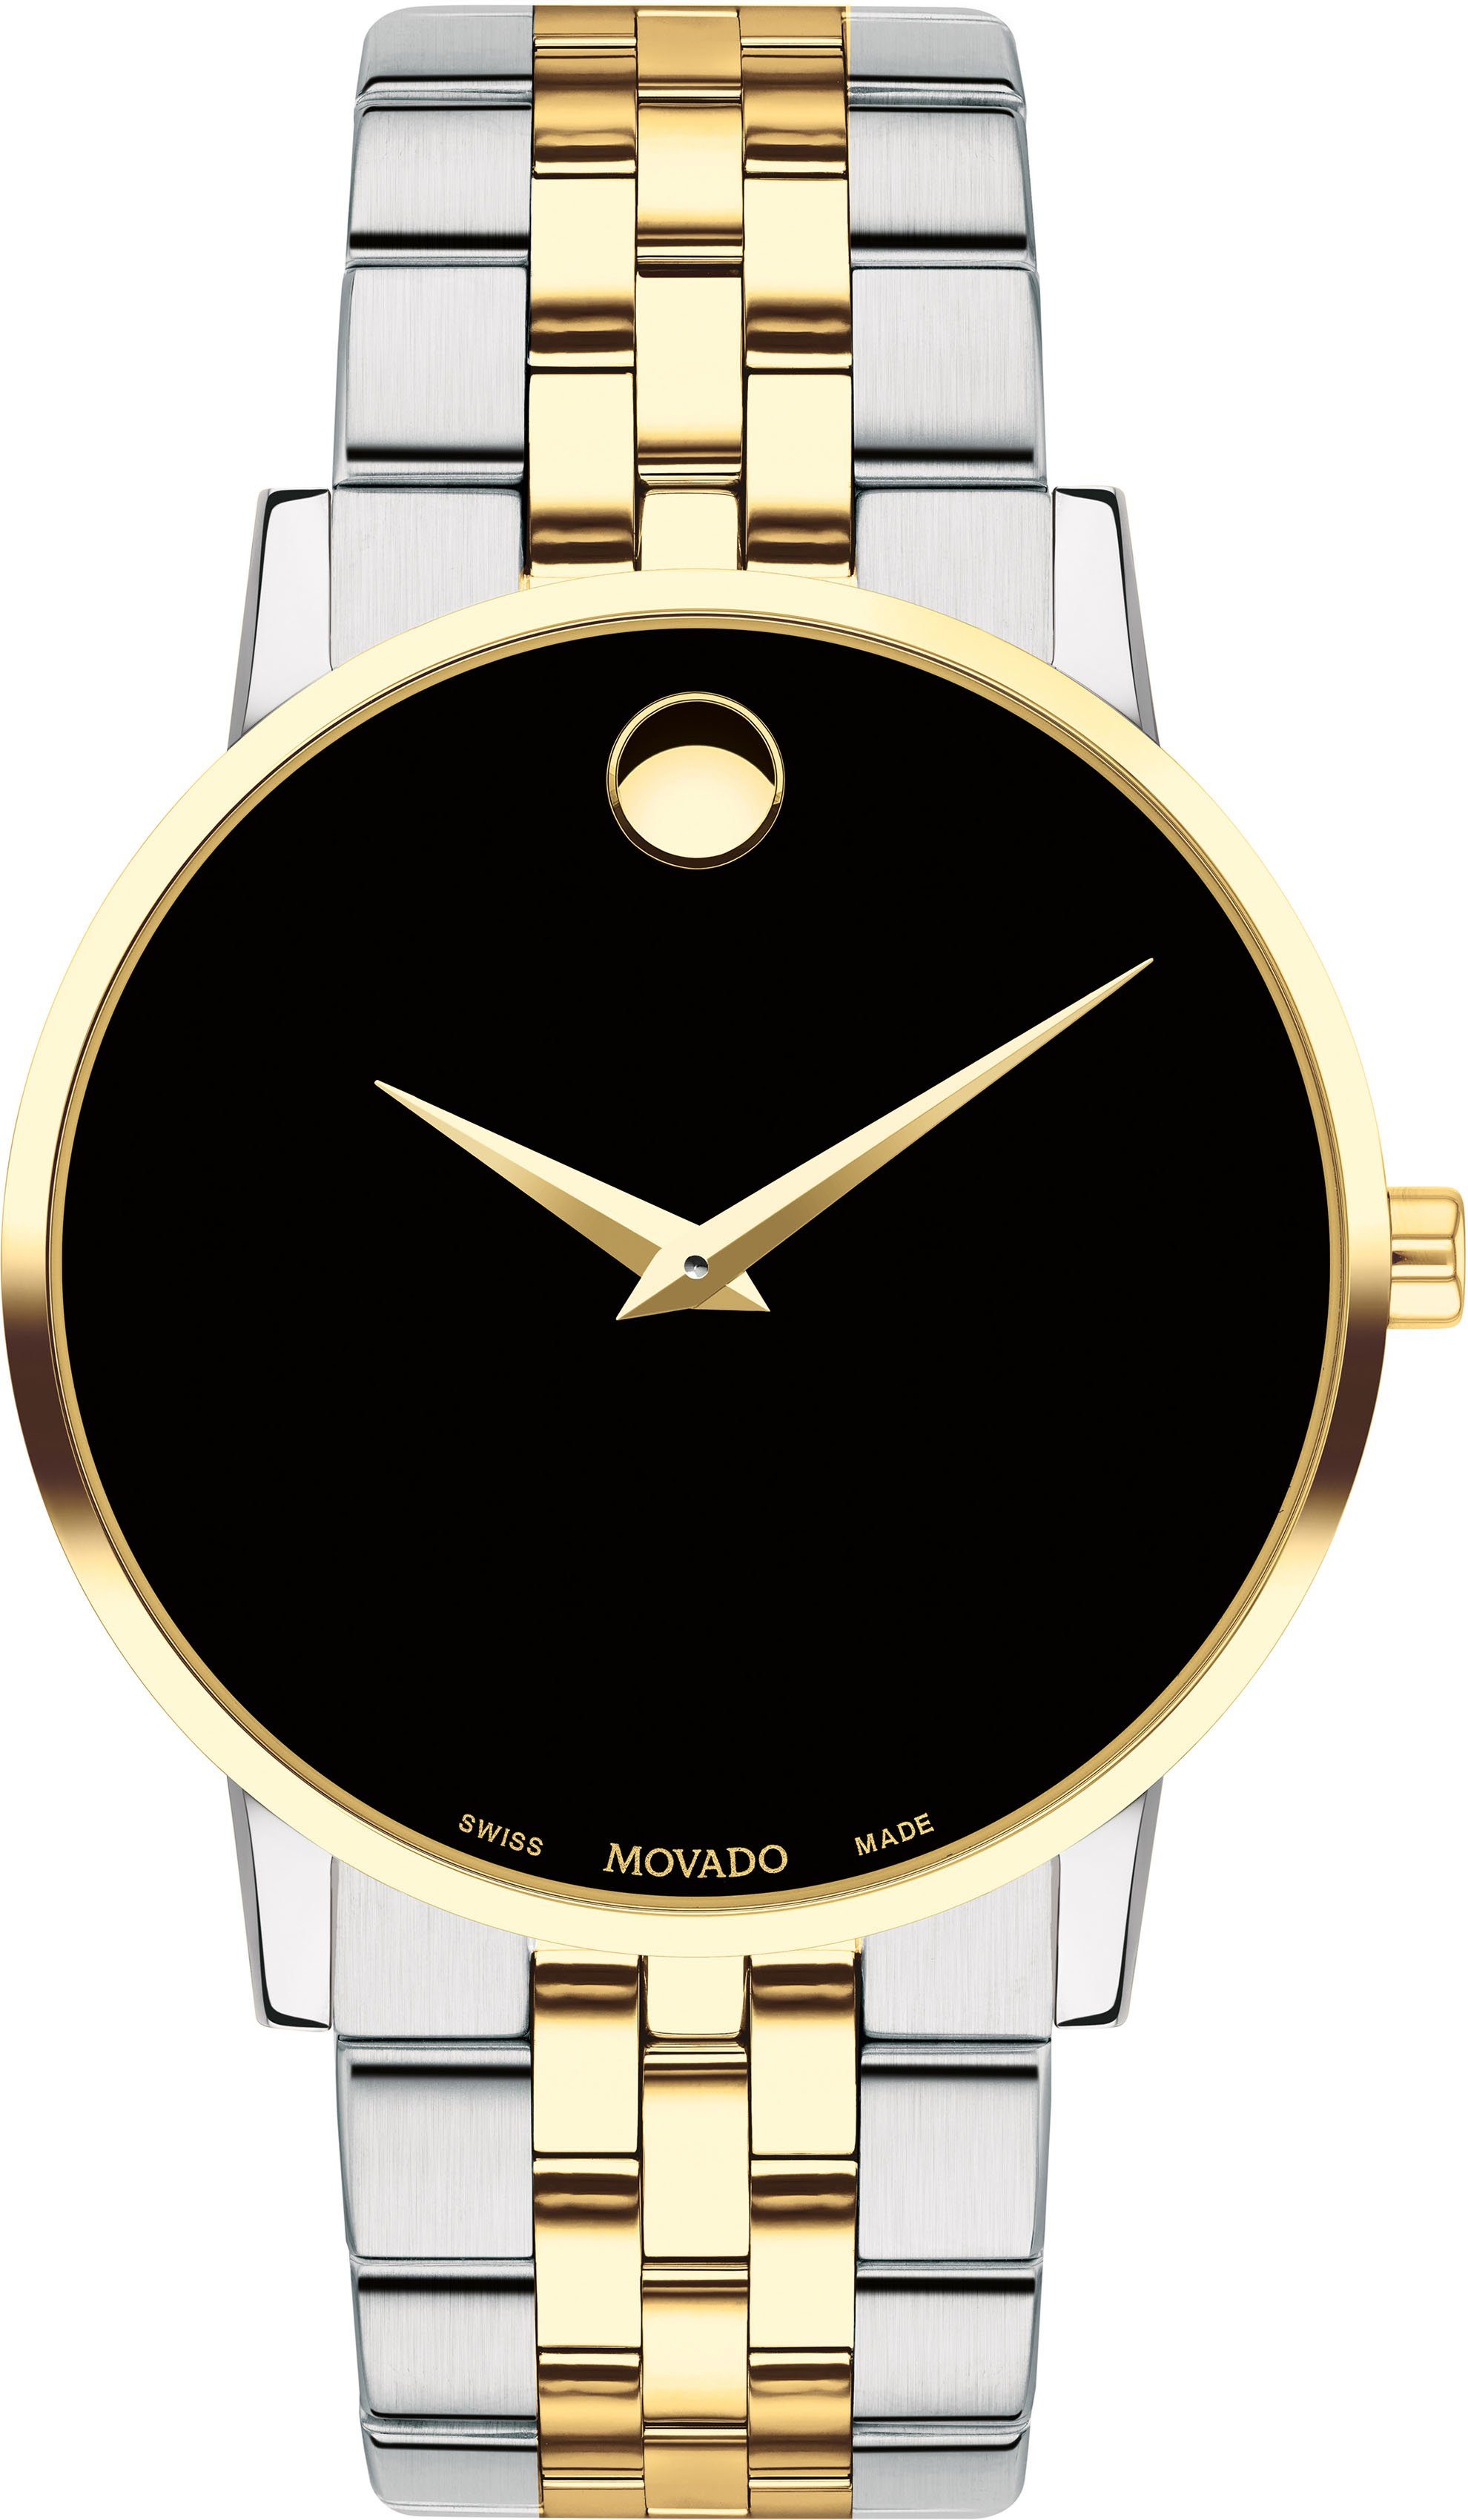 MOVADO Schweizer Uhr Museum Classic, 0607200, Quarzuhr, Armbanduhr, Herrenuhr, Swiss Made, bicolor